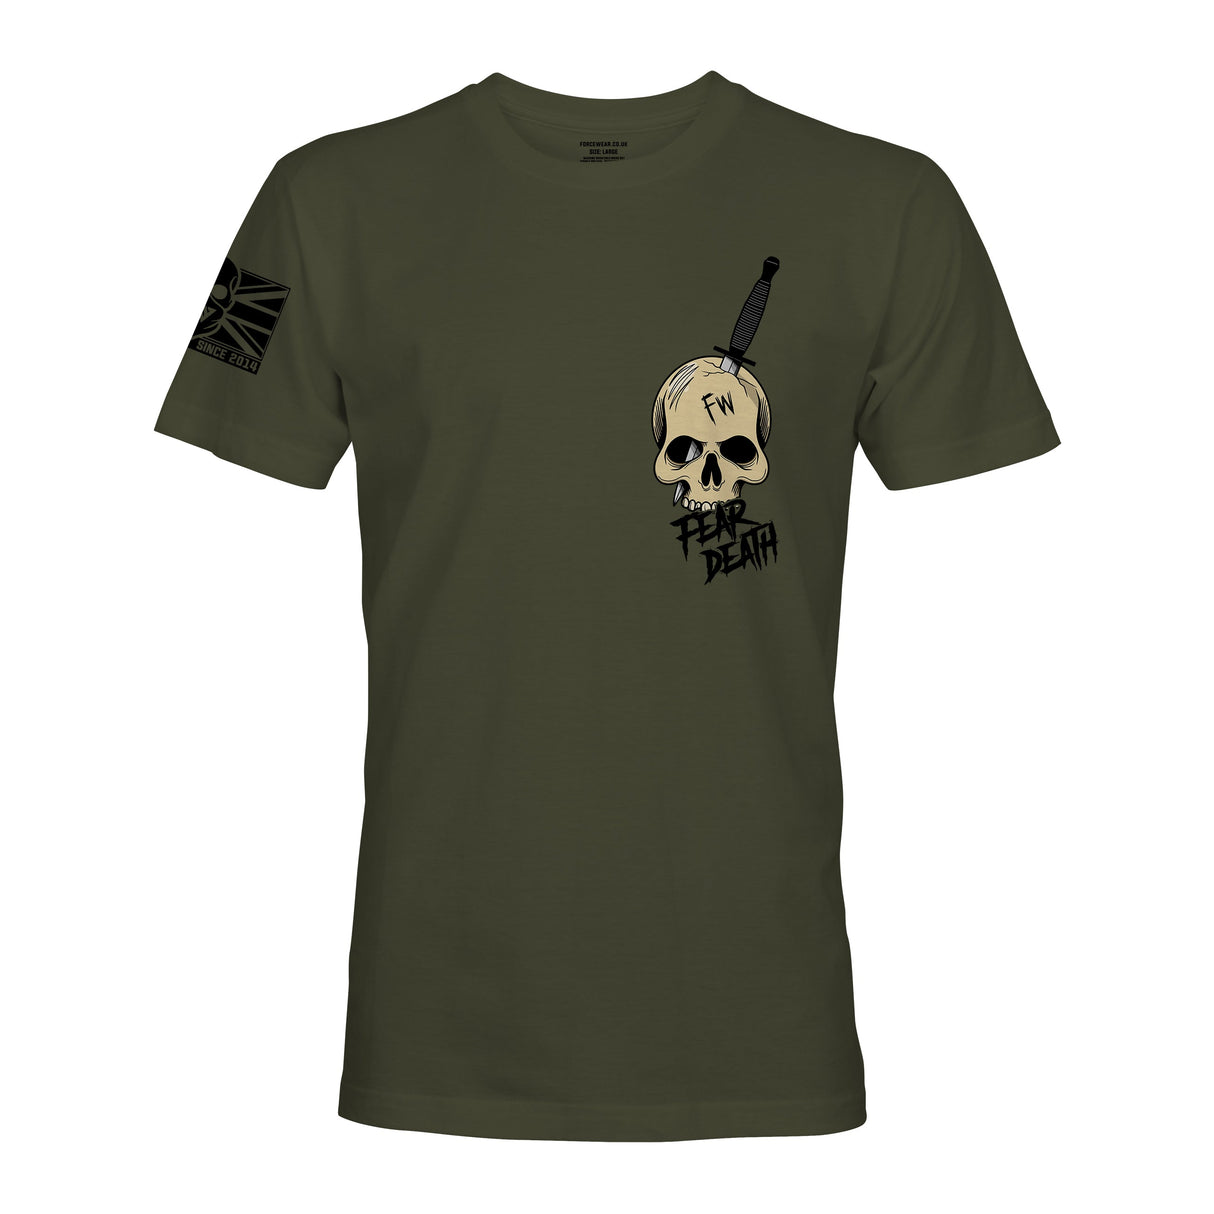 FW SAS FEAR DEATH - Force Wear HQ - T-SHIRTS